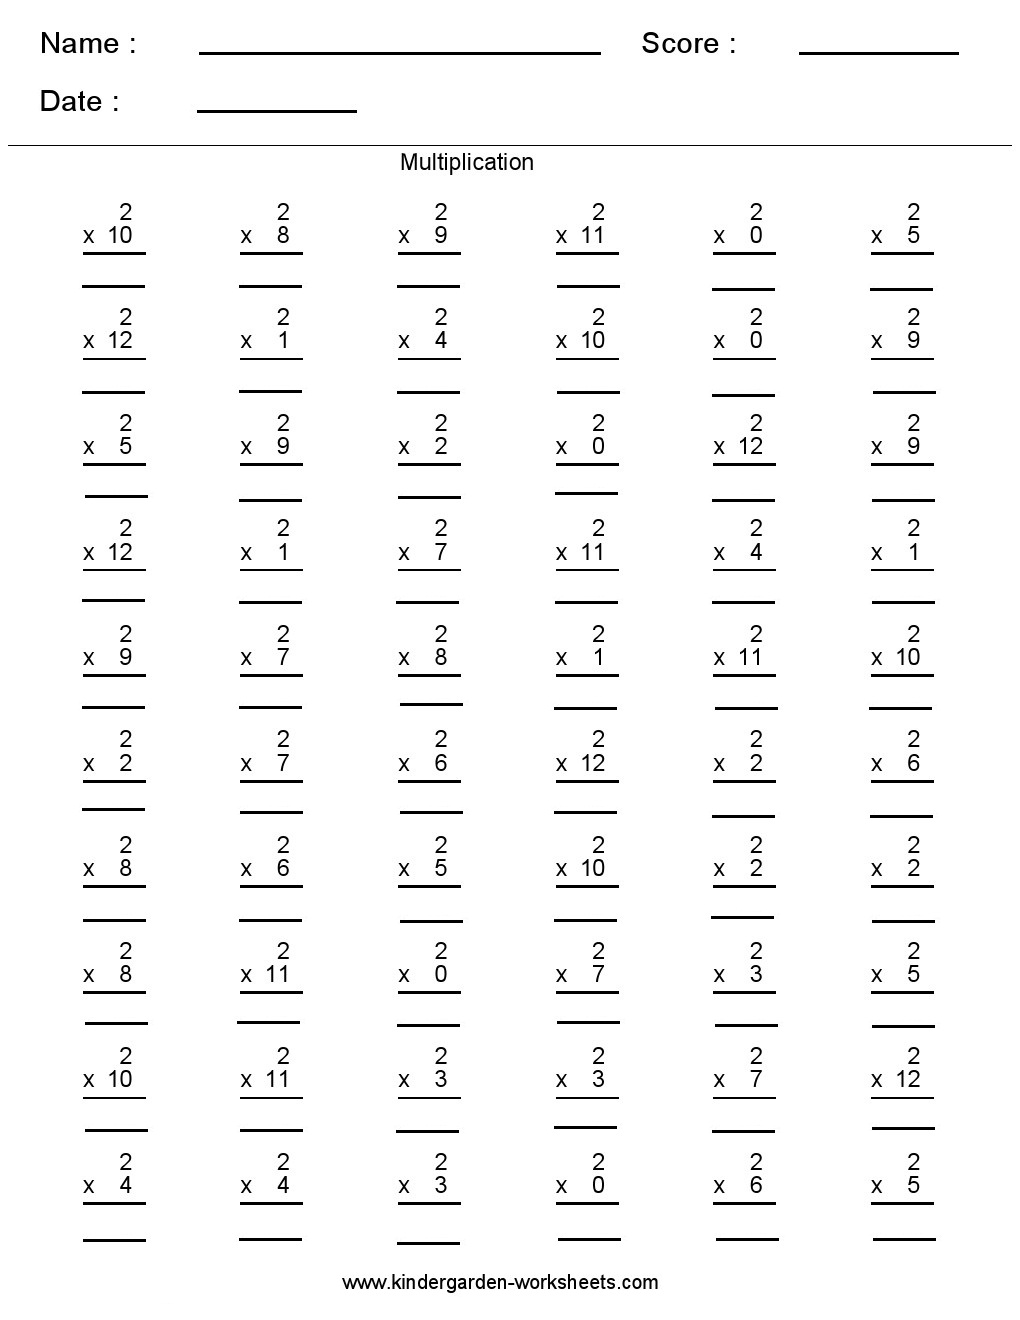 long-division-worksheets-for-5th-grade-long-division-worksheets-math-2-digit-divisor